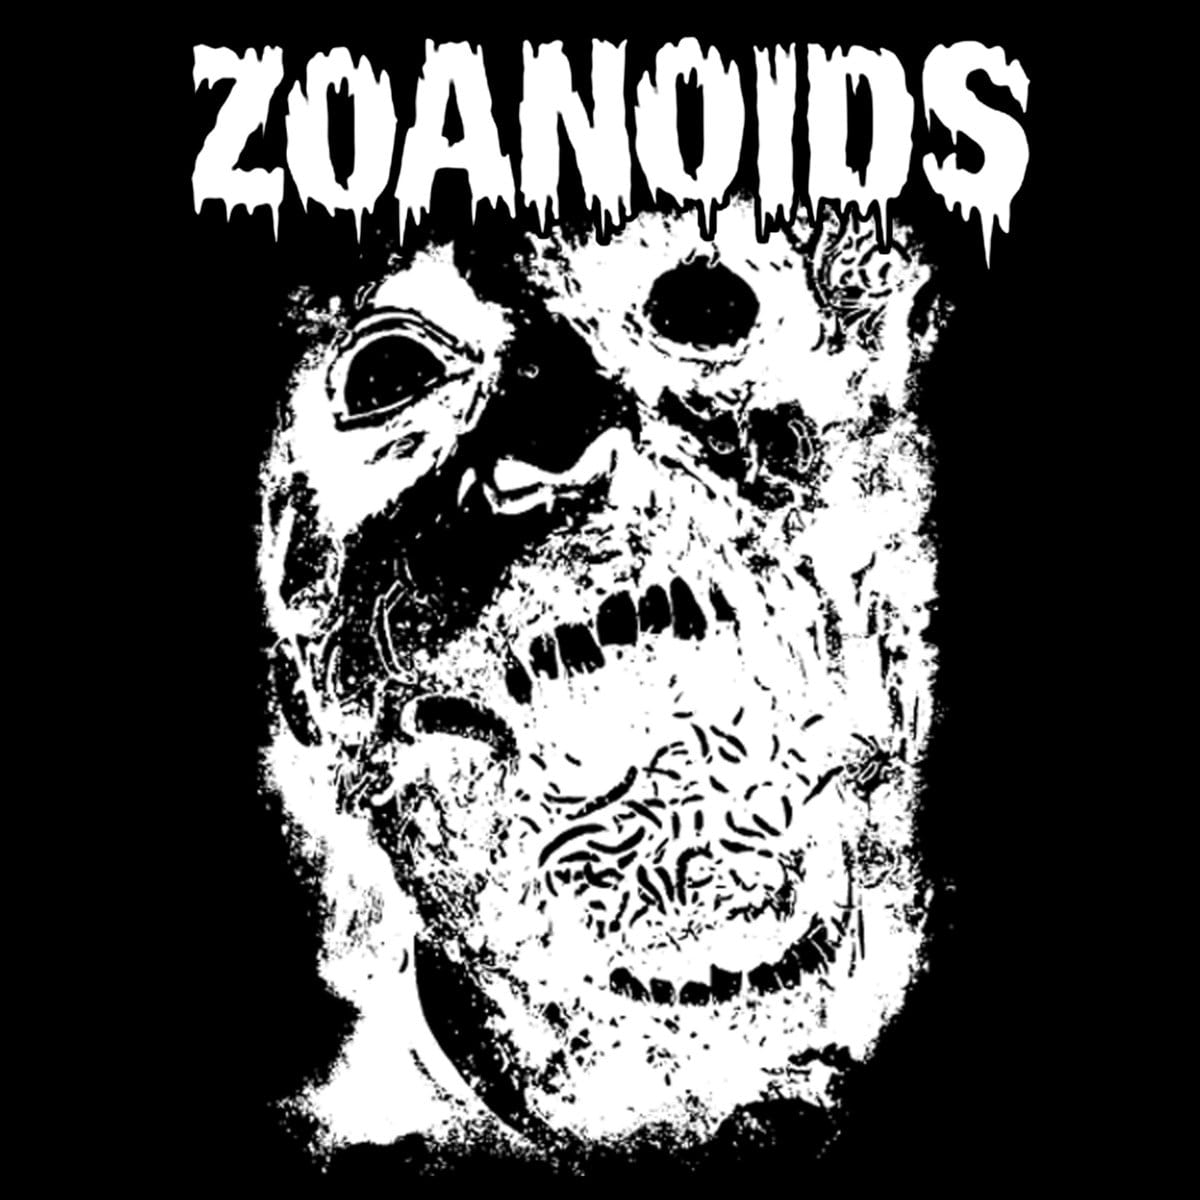 Zoanoids - "Zoanoids" LP